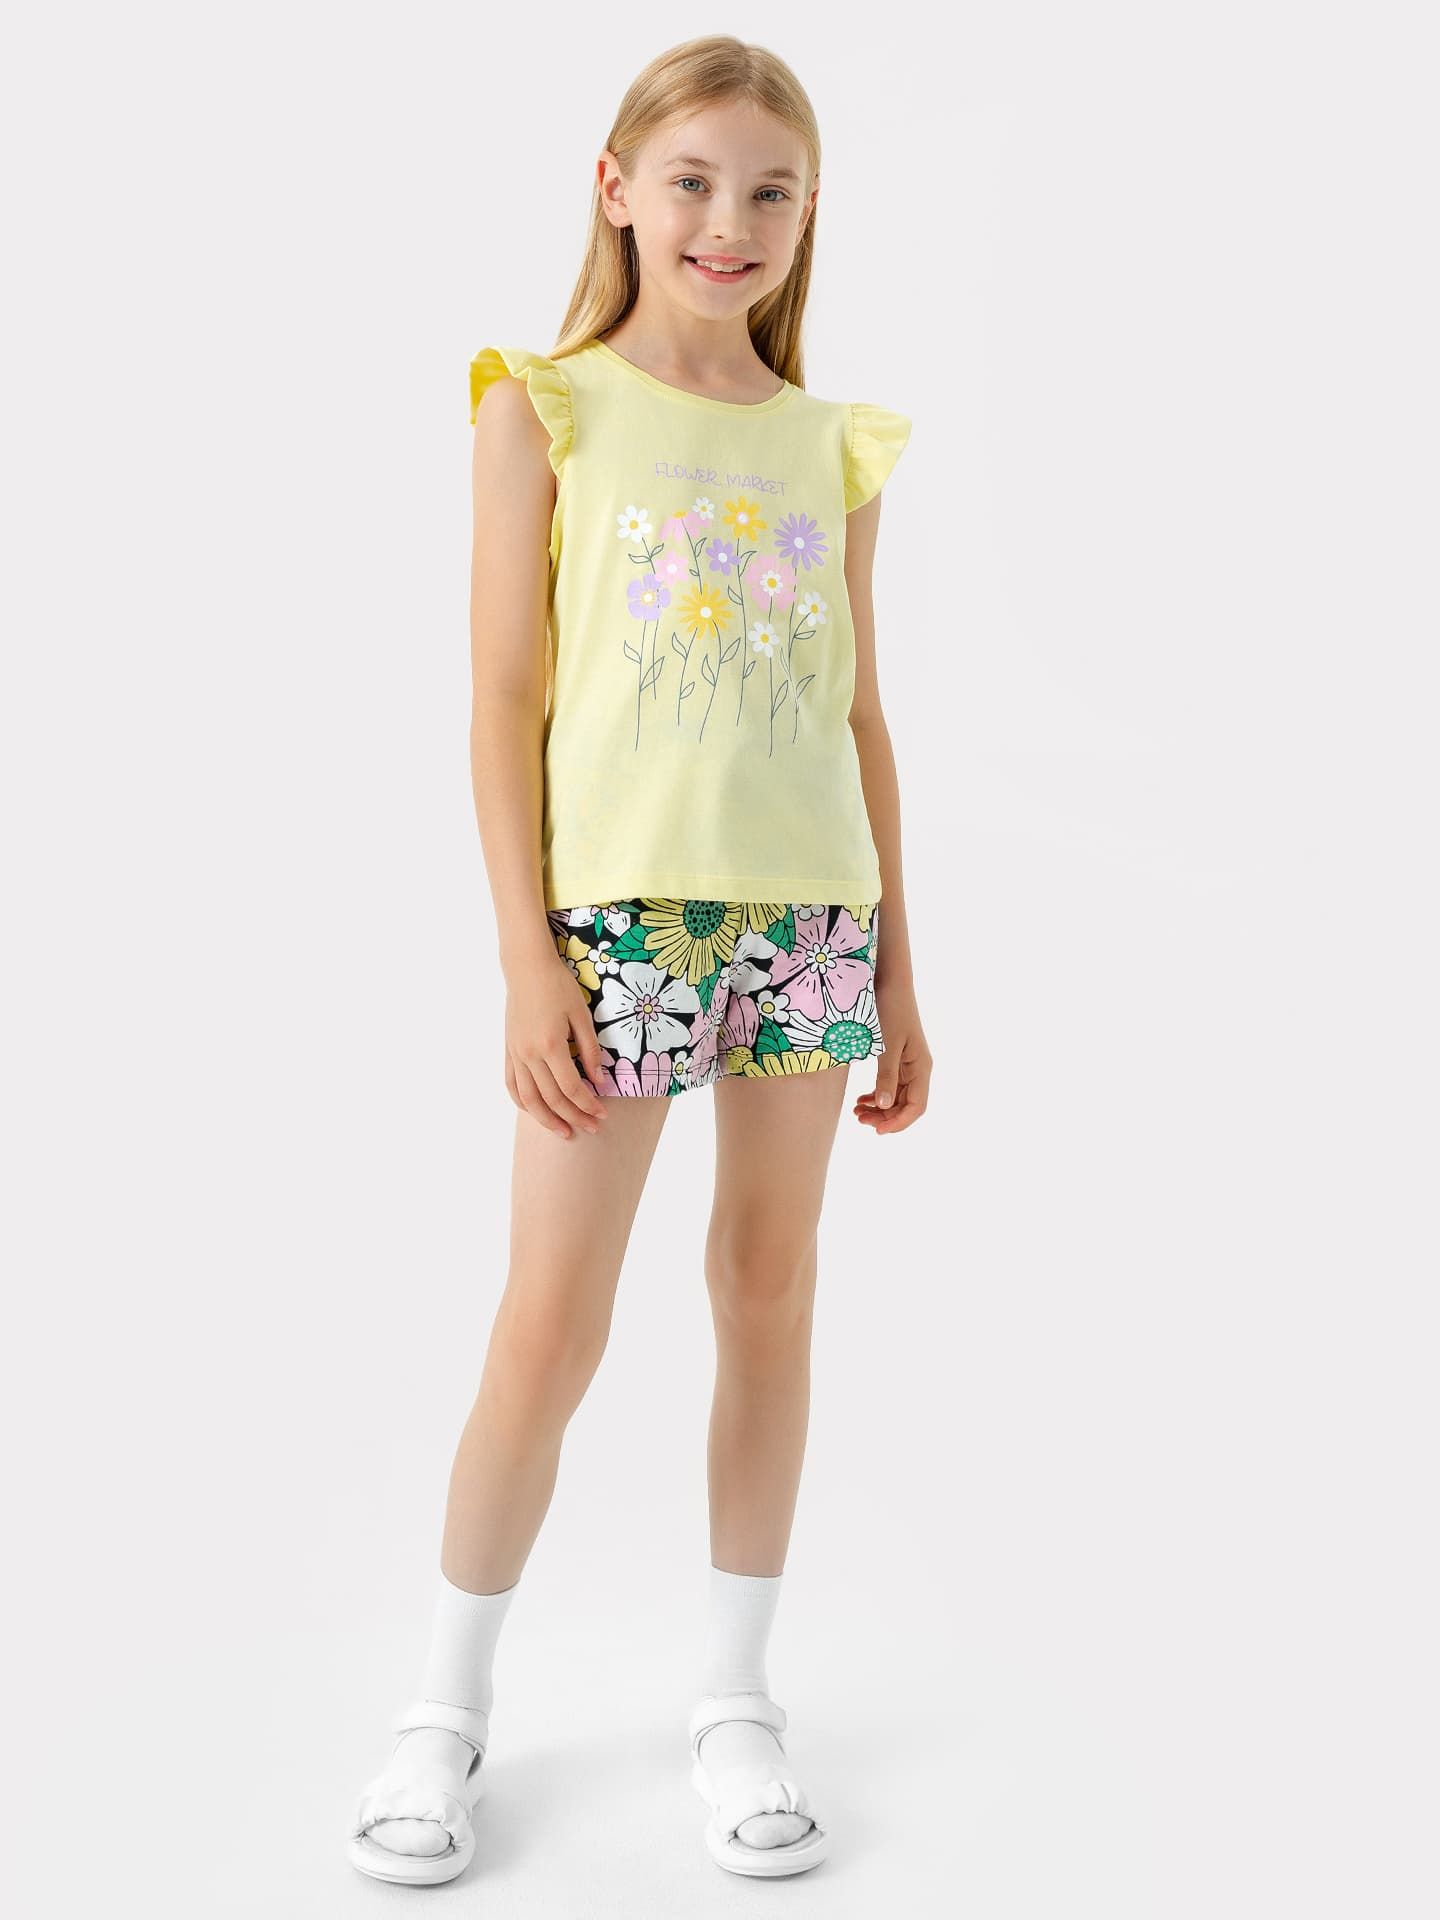 Комплект для девочек (футболка, шорты) в желтом цвете с рисунком цветов